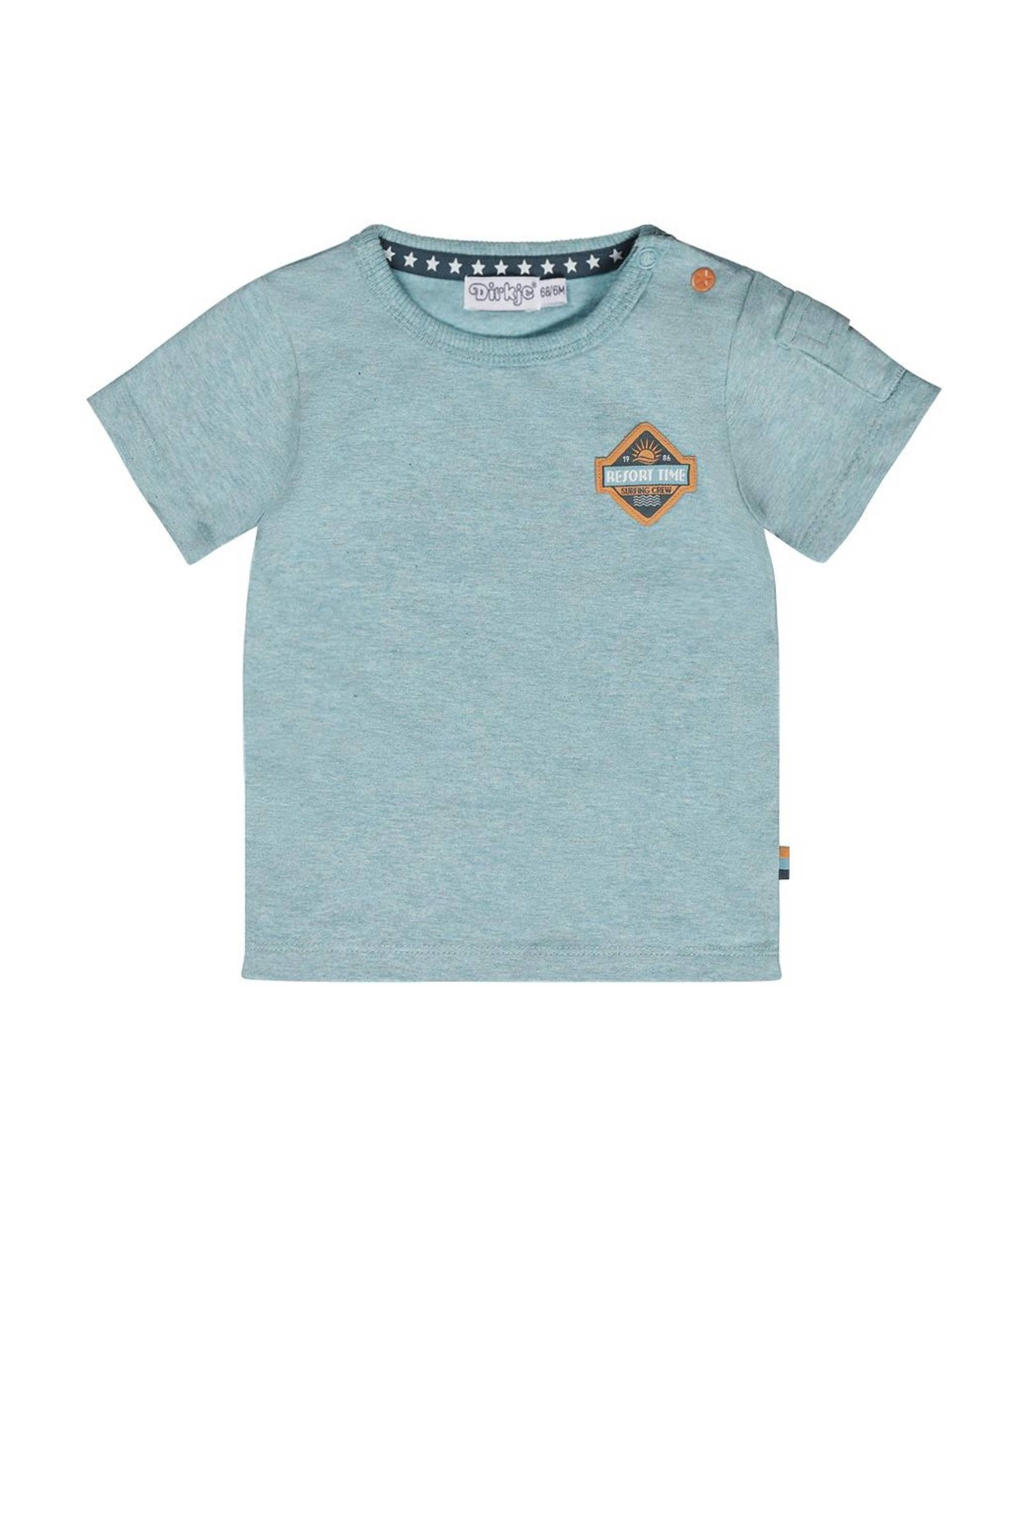 Blauwe jongens Dirkje T-shirt T-shirt ss van katoen met logo dessin, korte mouwen en ronde hals